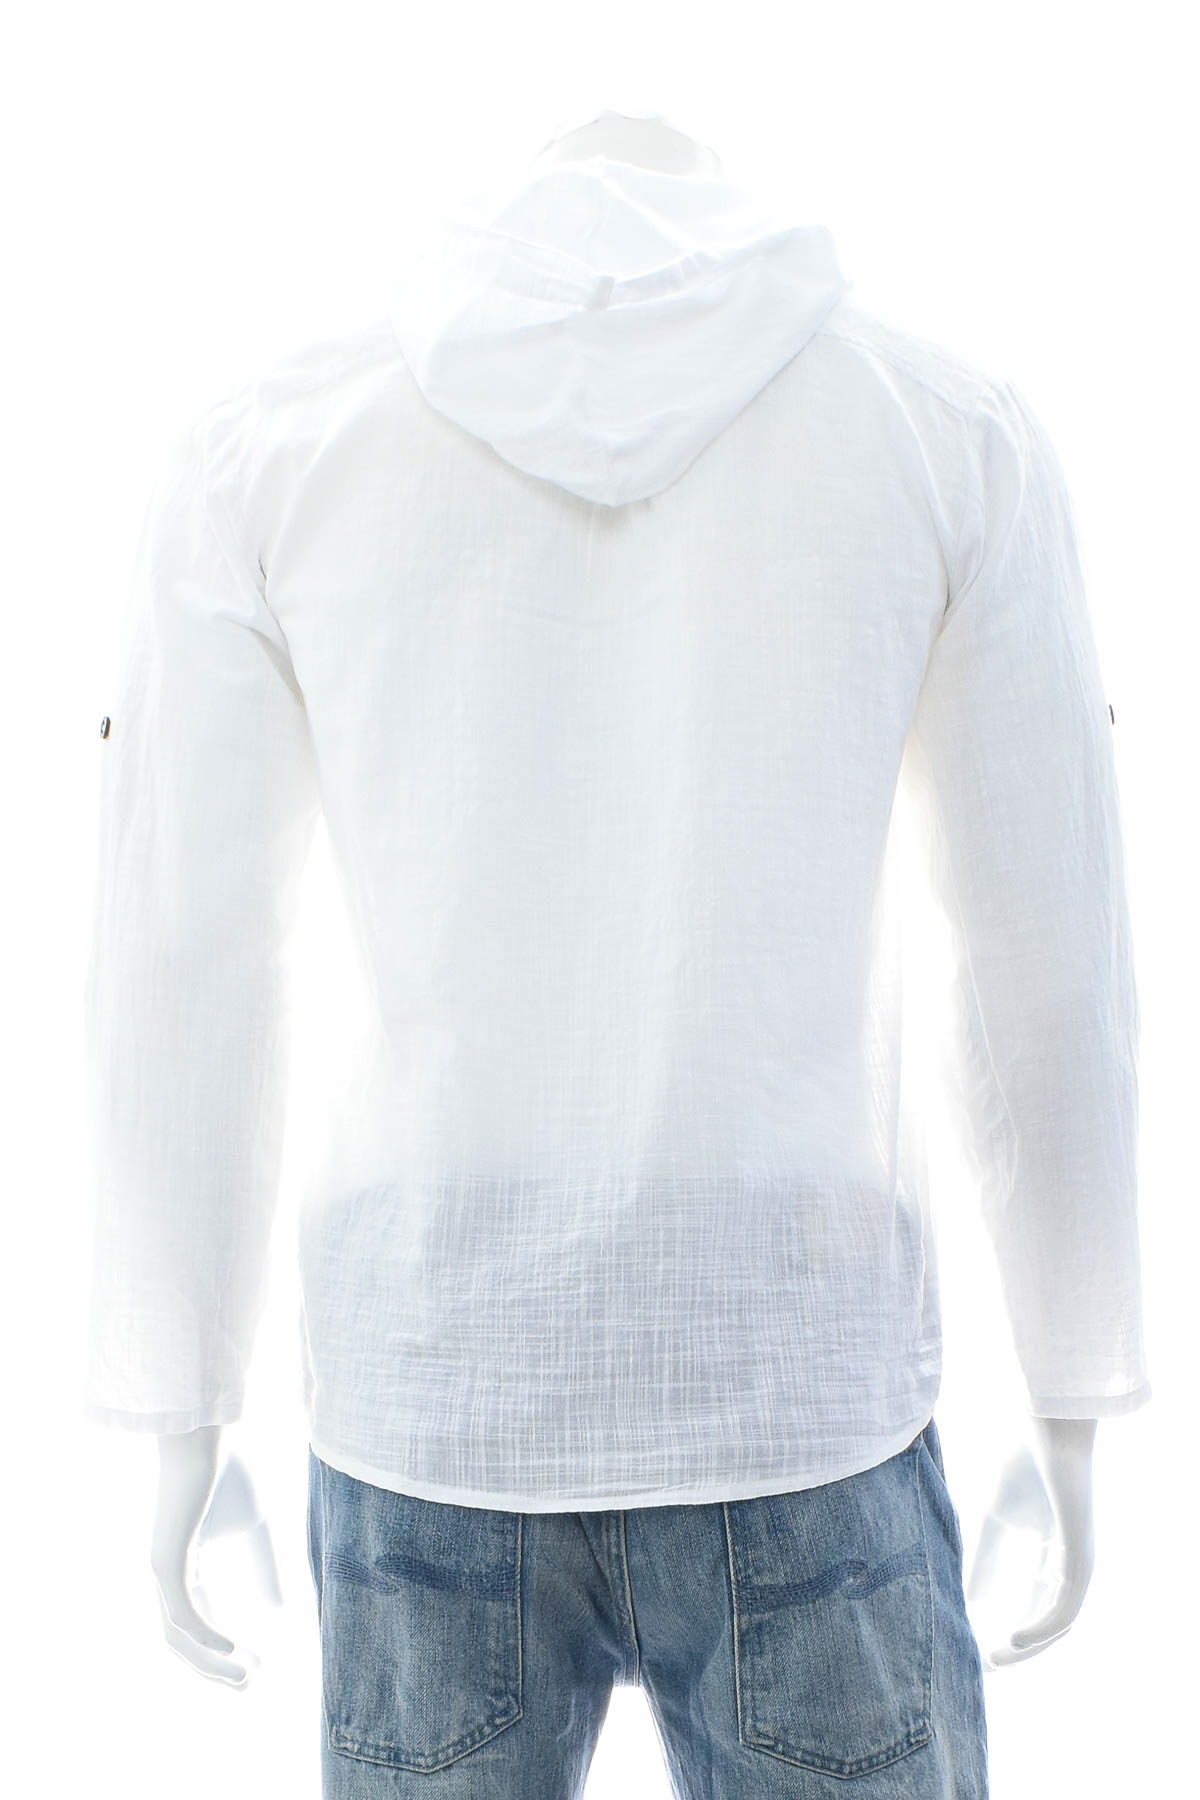 Men's shirt - ATB-D Collection - 1